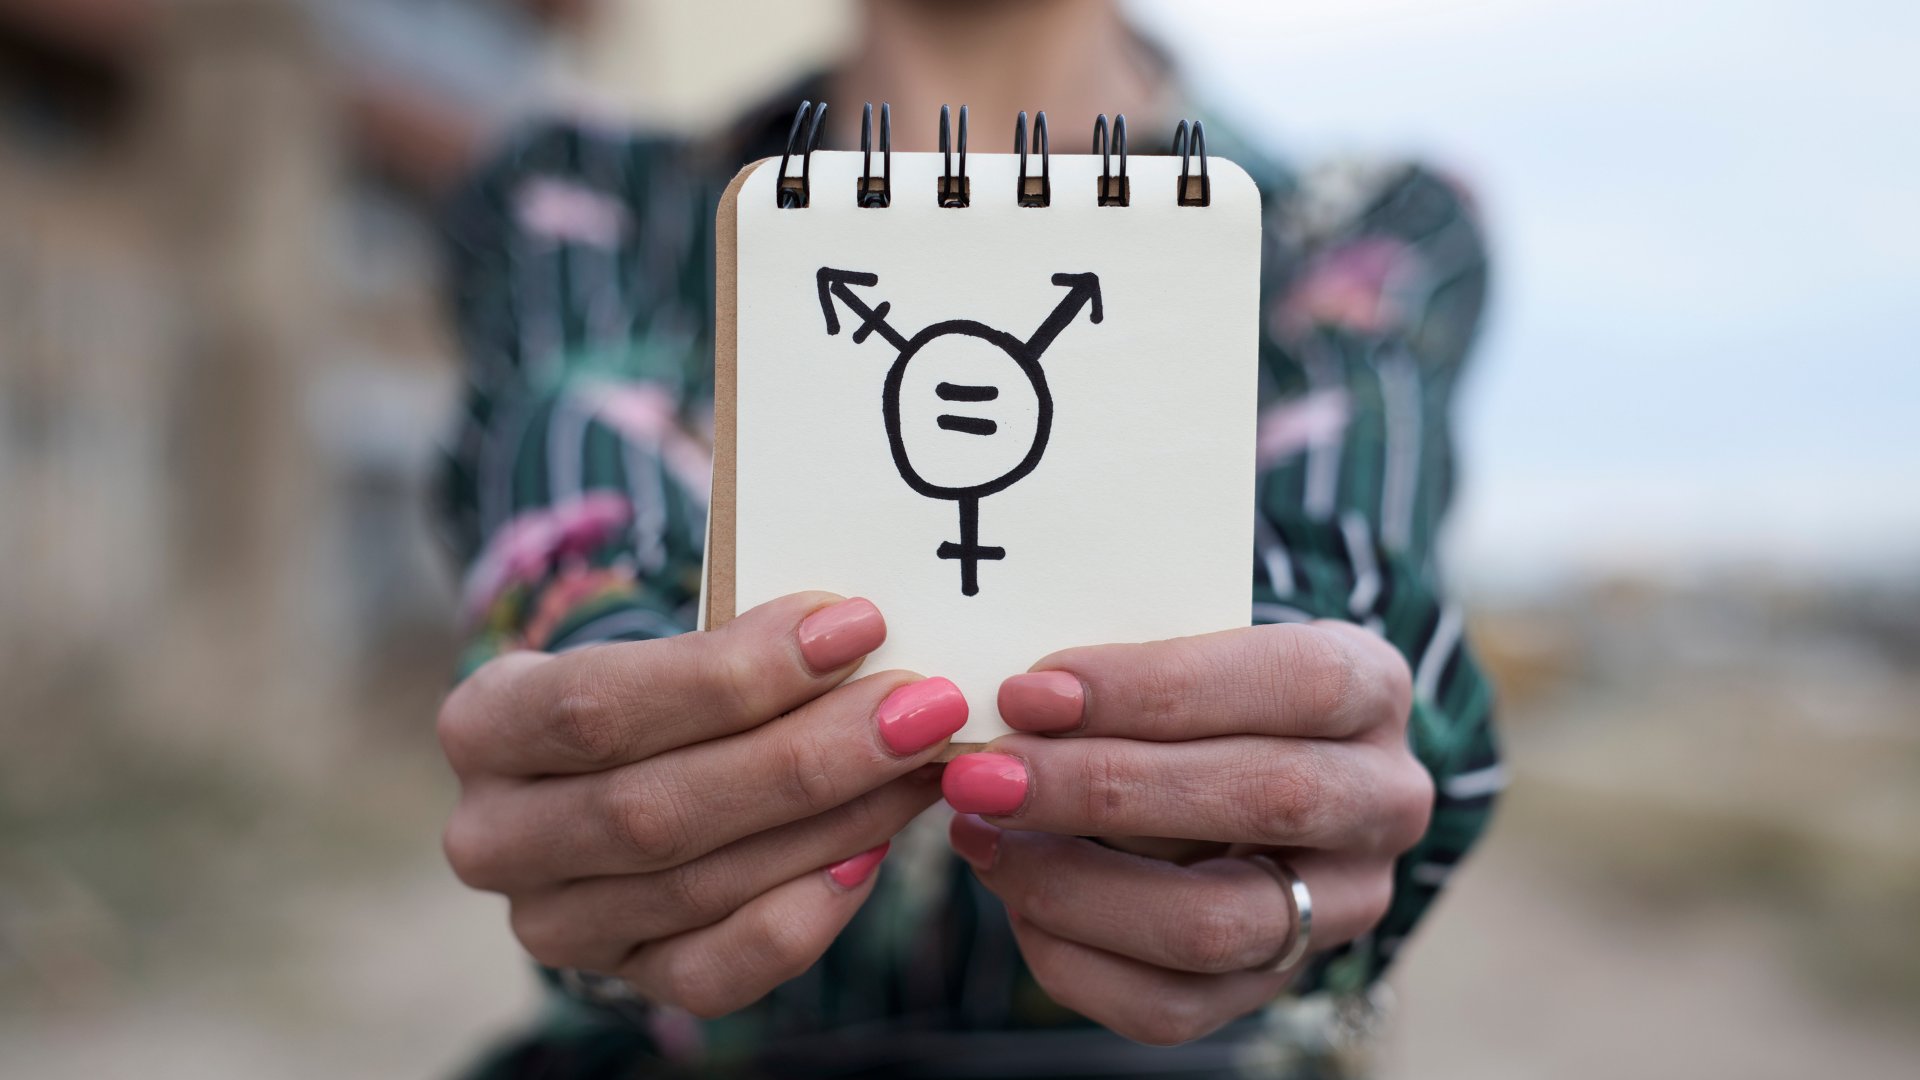 Uma pessoa segurando um bloco de notas que contém um desenho do símbolo transexual.